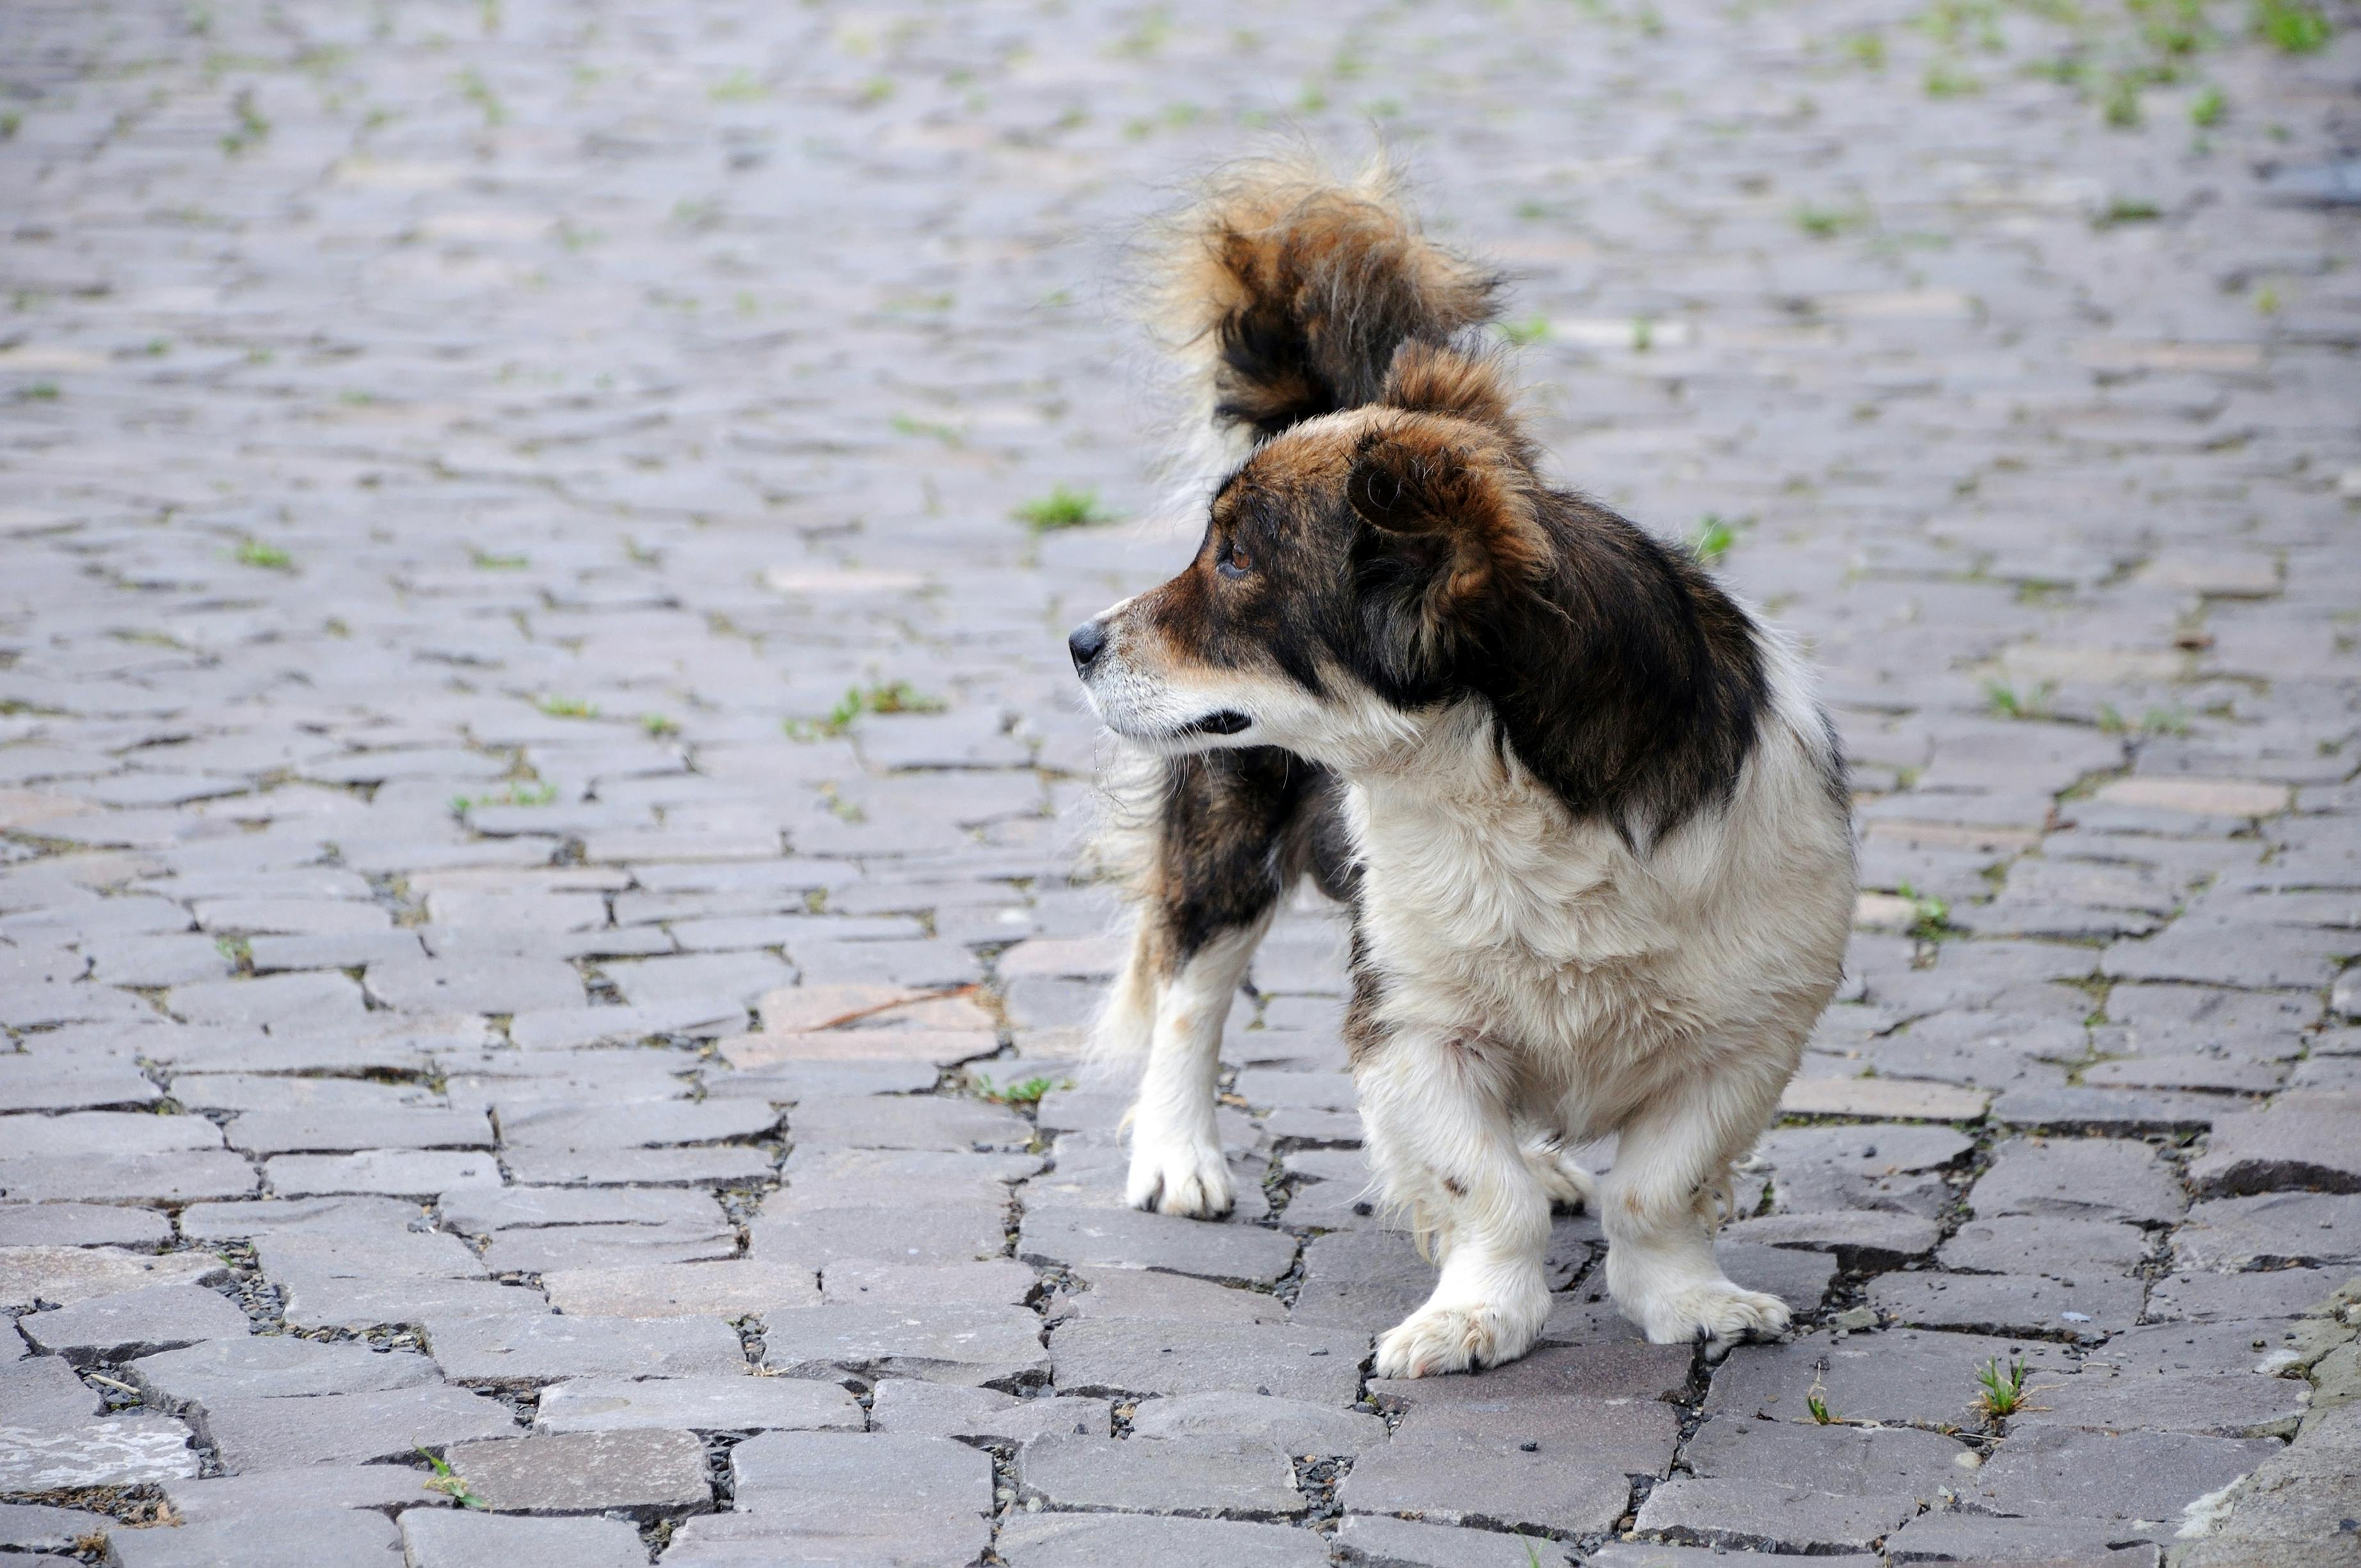 Short-legged dog looking back